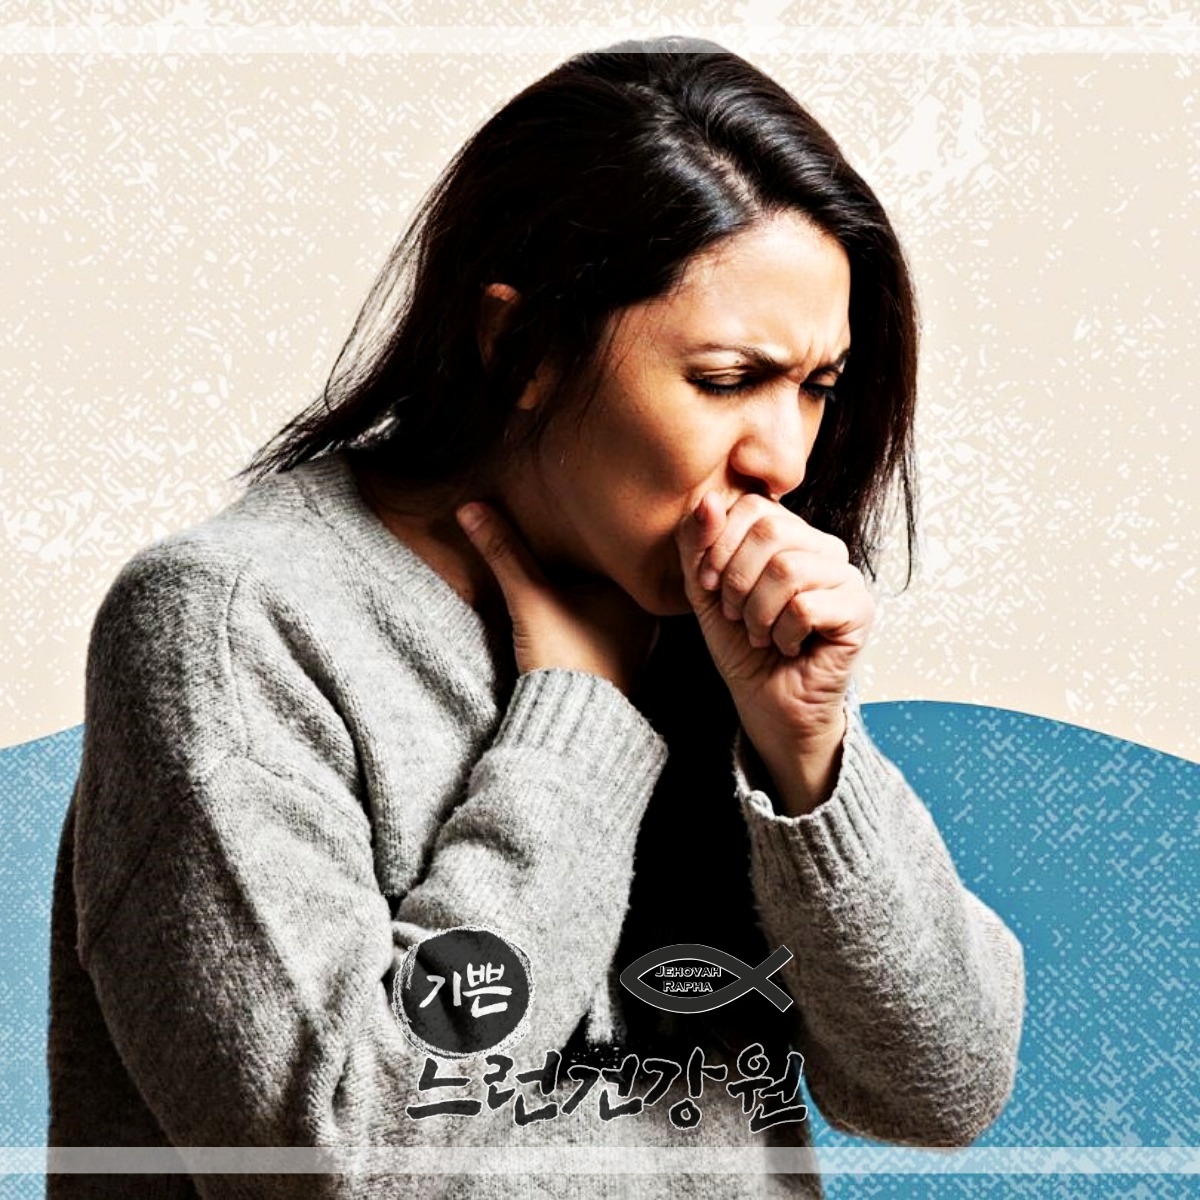 통증과 함께 호흡곤란&#44; 심한 기침 등이 나타날 수 있어서 코로나 가래는 위험합니다.